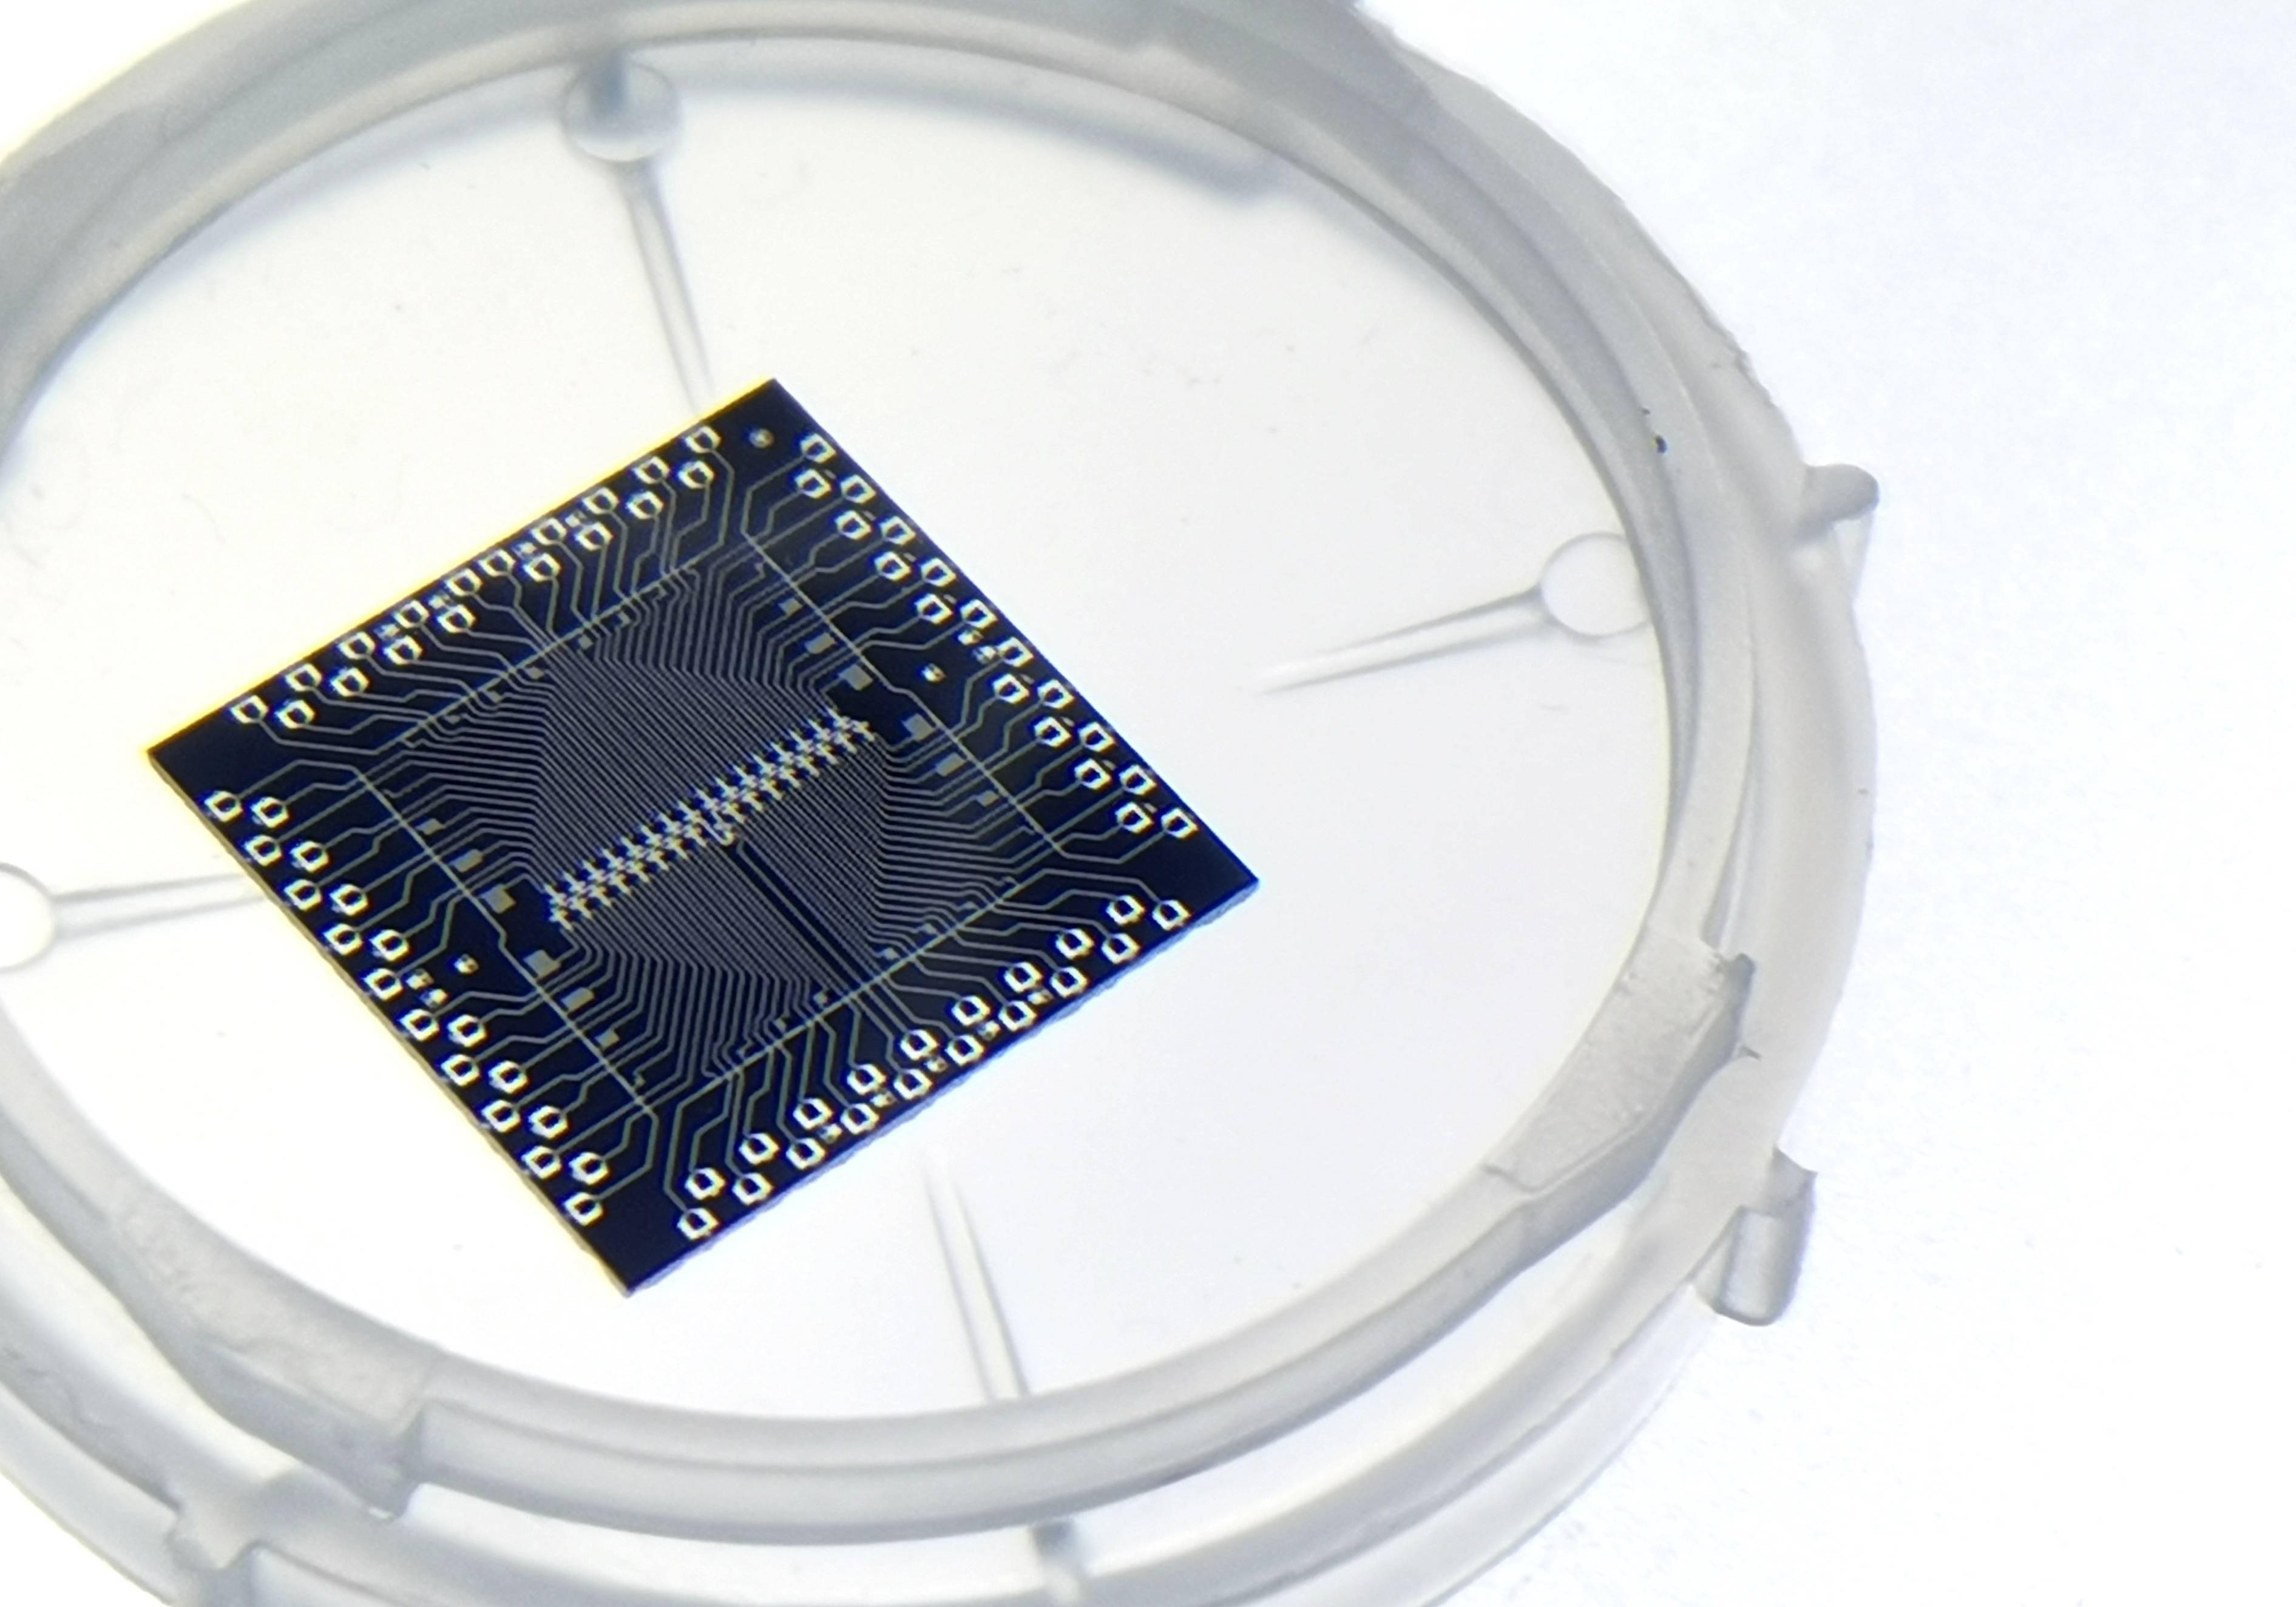 量子计算工具上新,浙大发布两款超导量子芯片